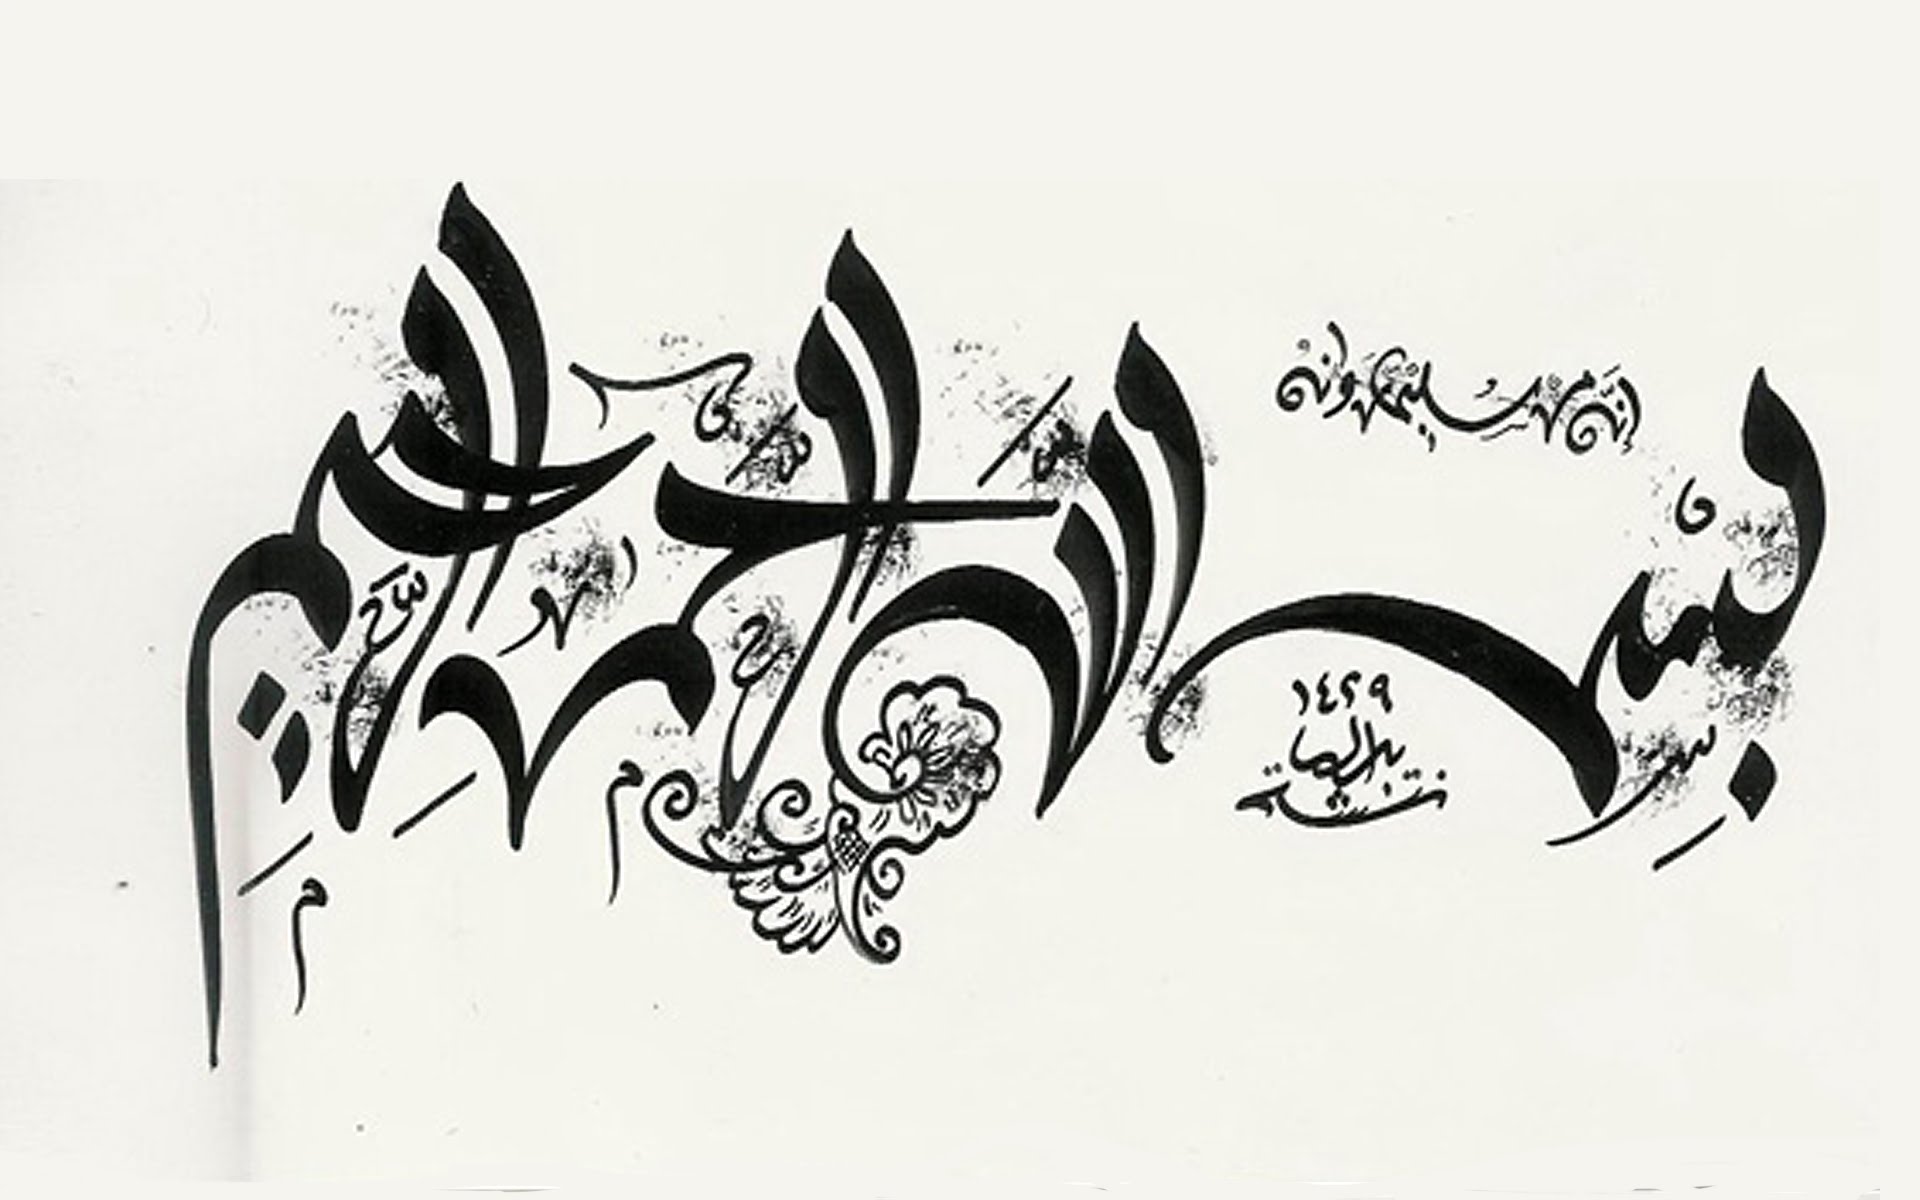 اجمل خطوط عربية للفوتوشوب , صور خطوط عربية لبرنامج الفوتوشوب رسائل حب